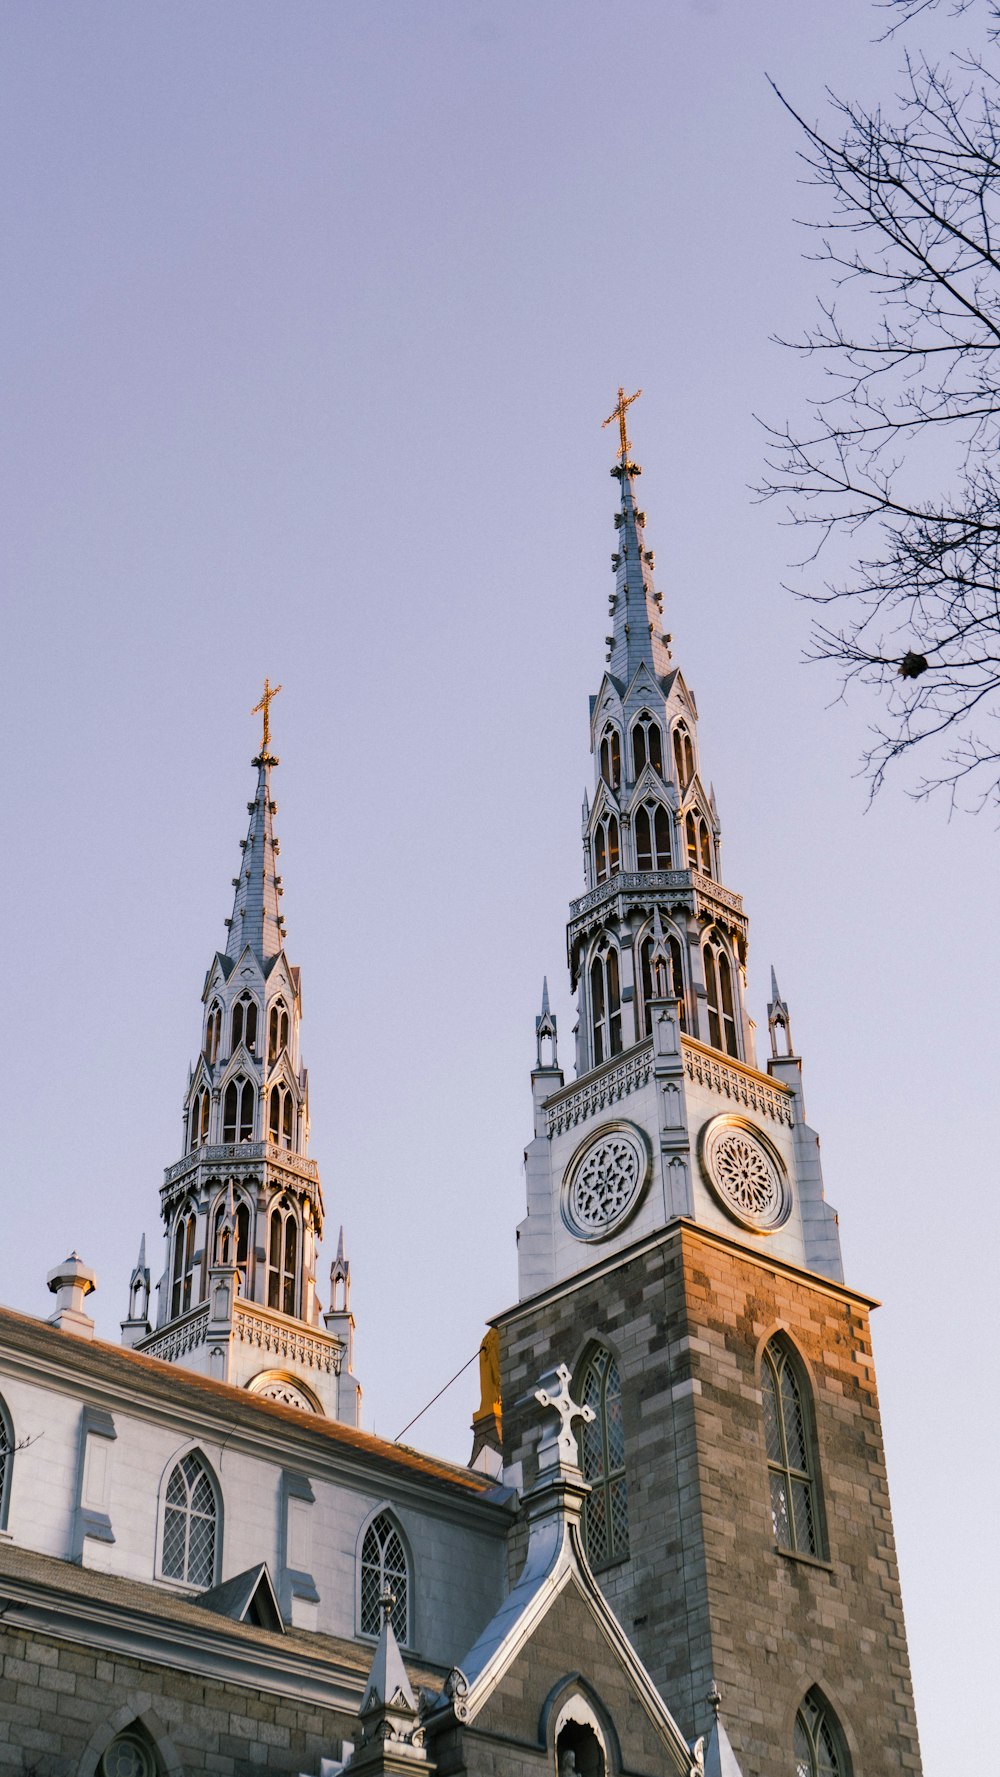 une église avec deux clochers et une tour de l’horloge